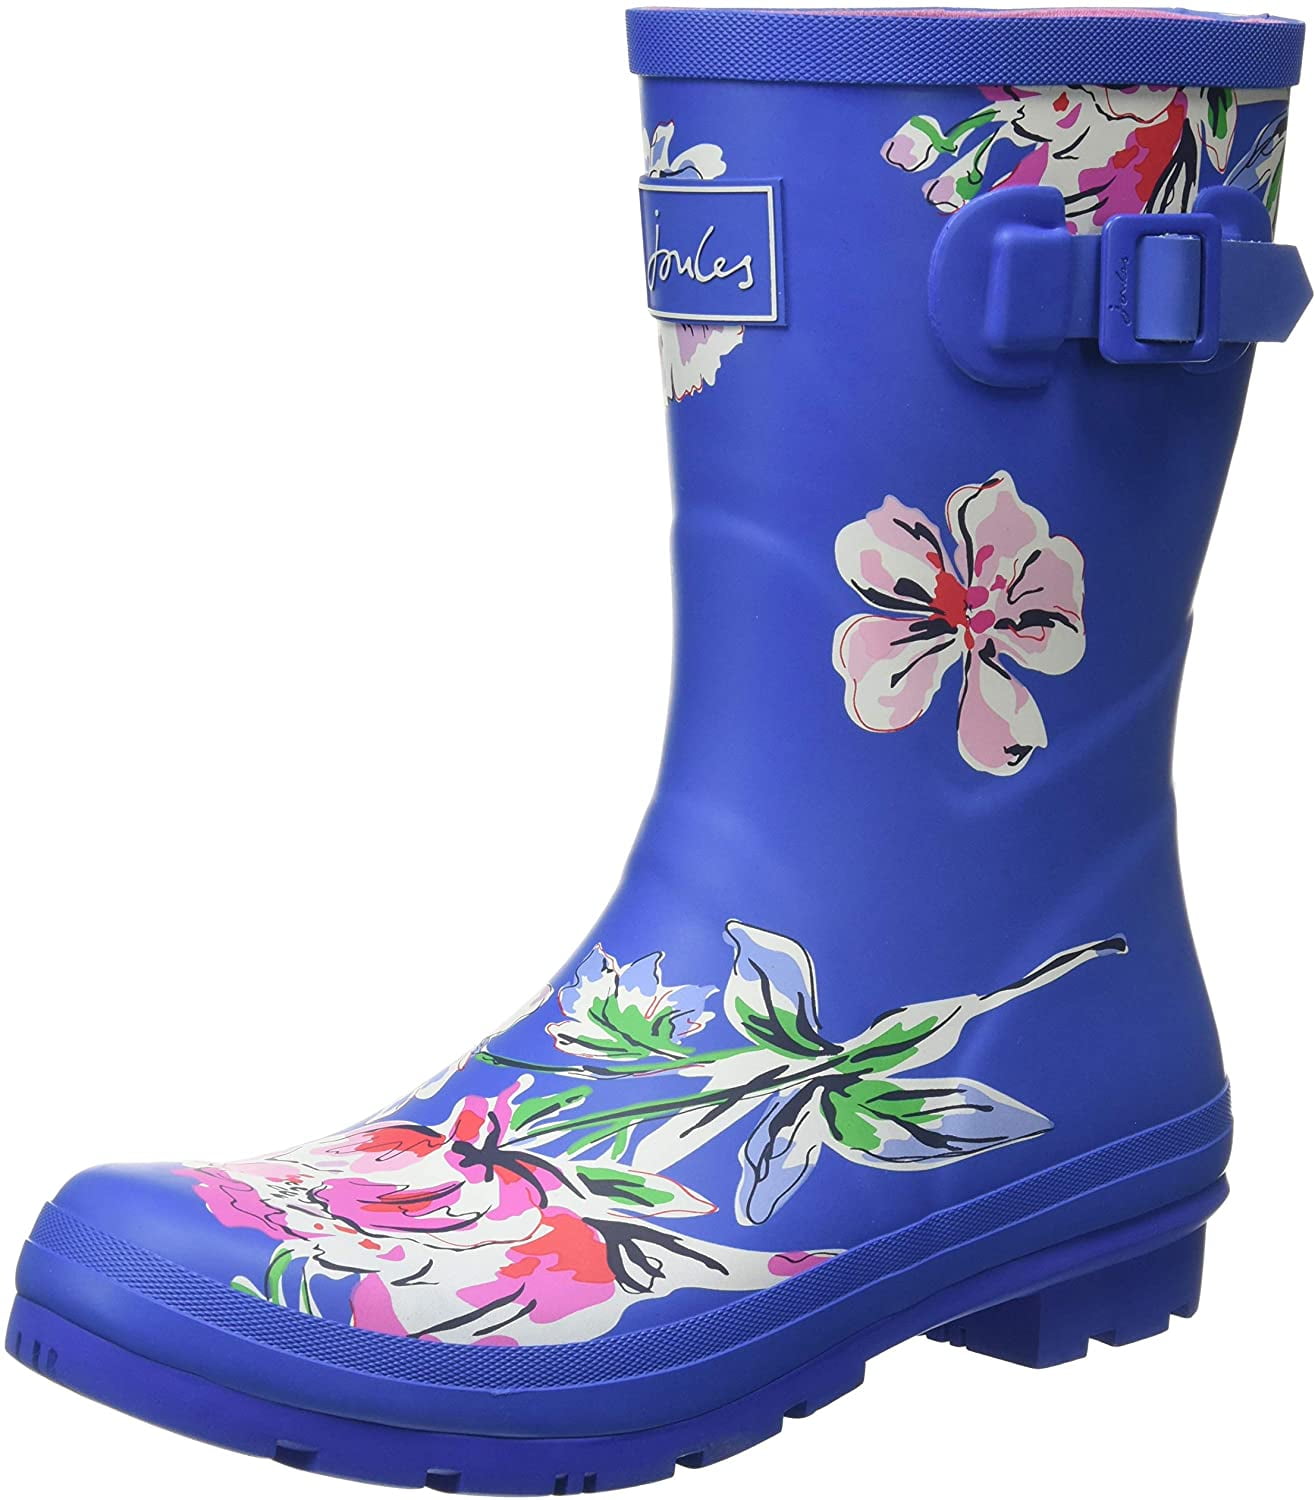 Joules Women's Wellington Boots Rain